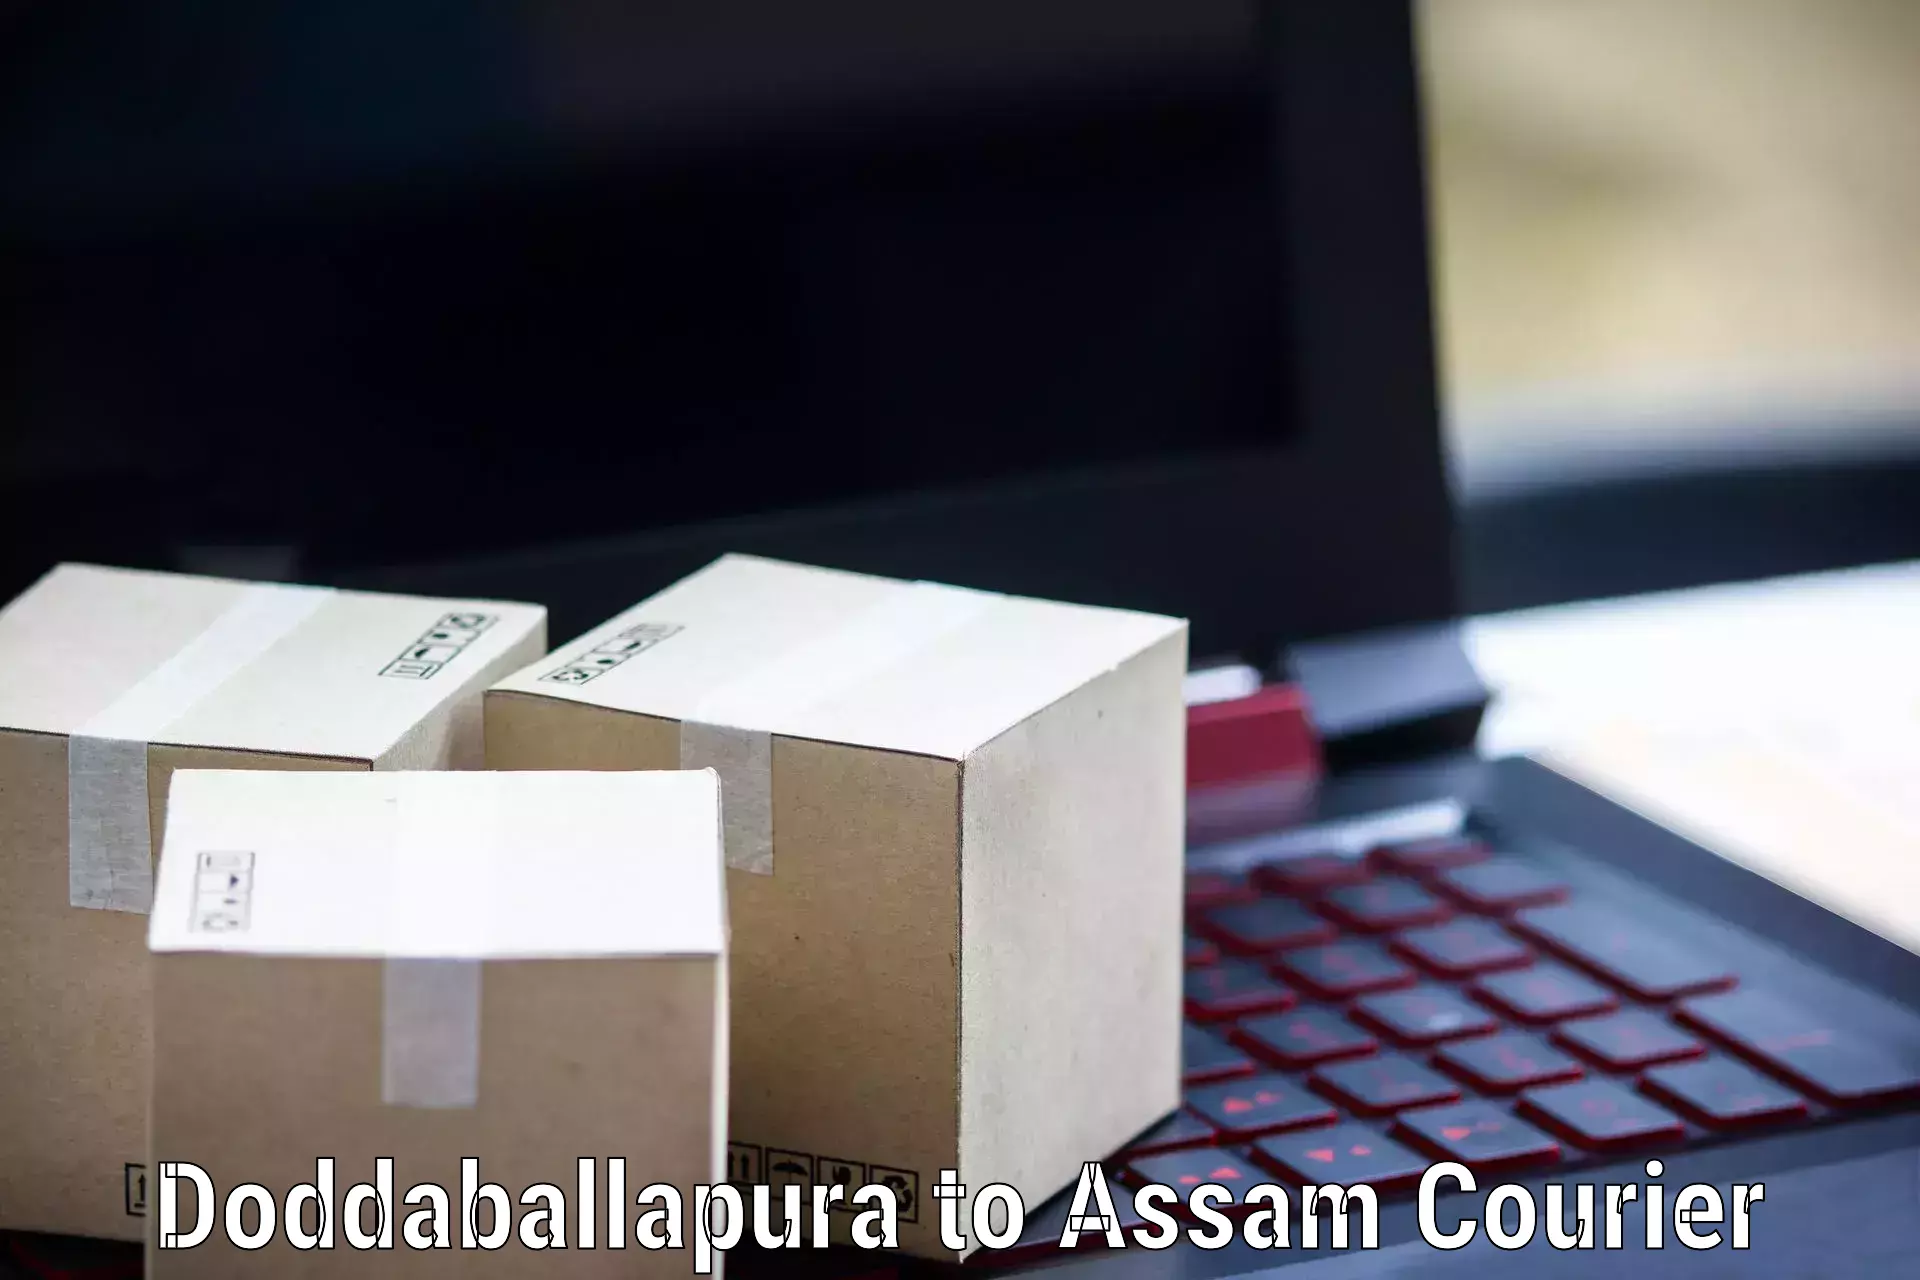 Online shipping calculator Doddaballapura to Jamugurihat